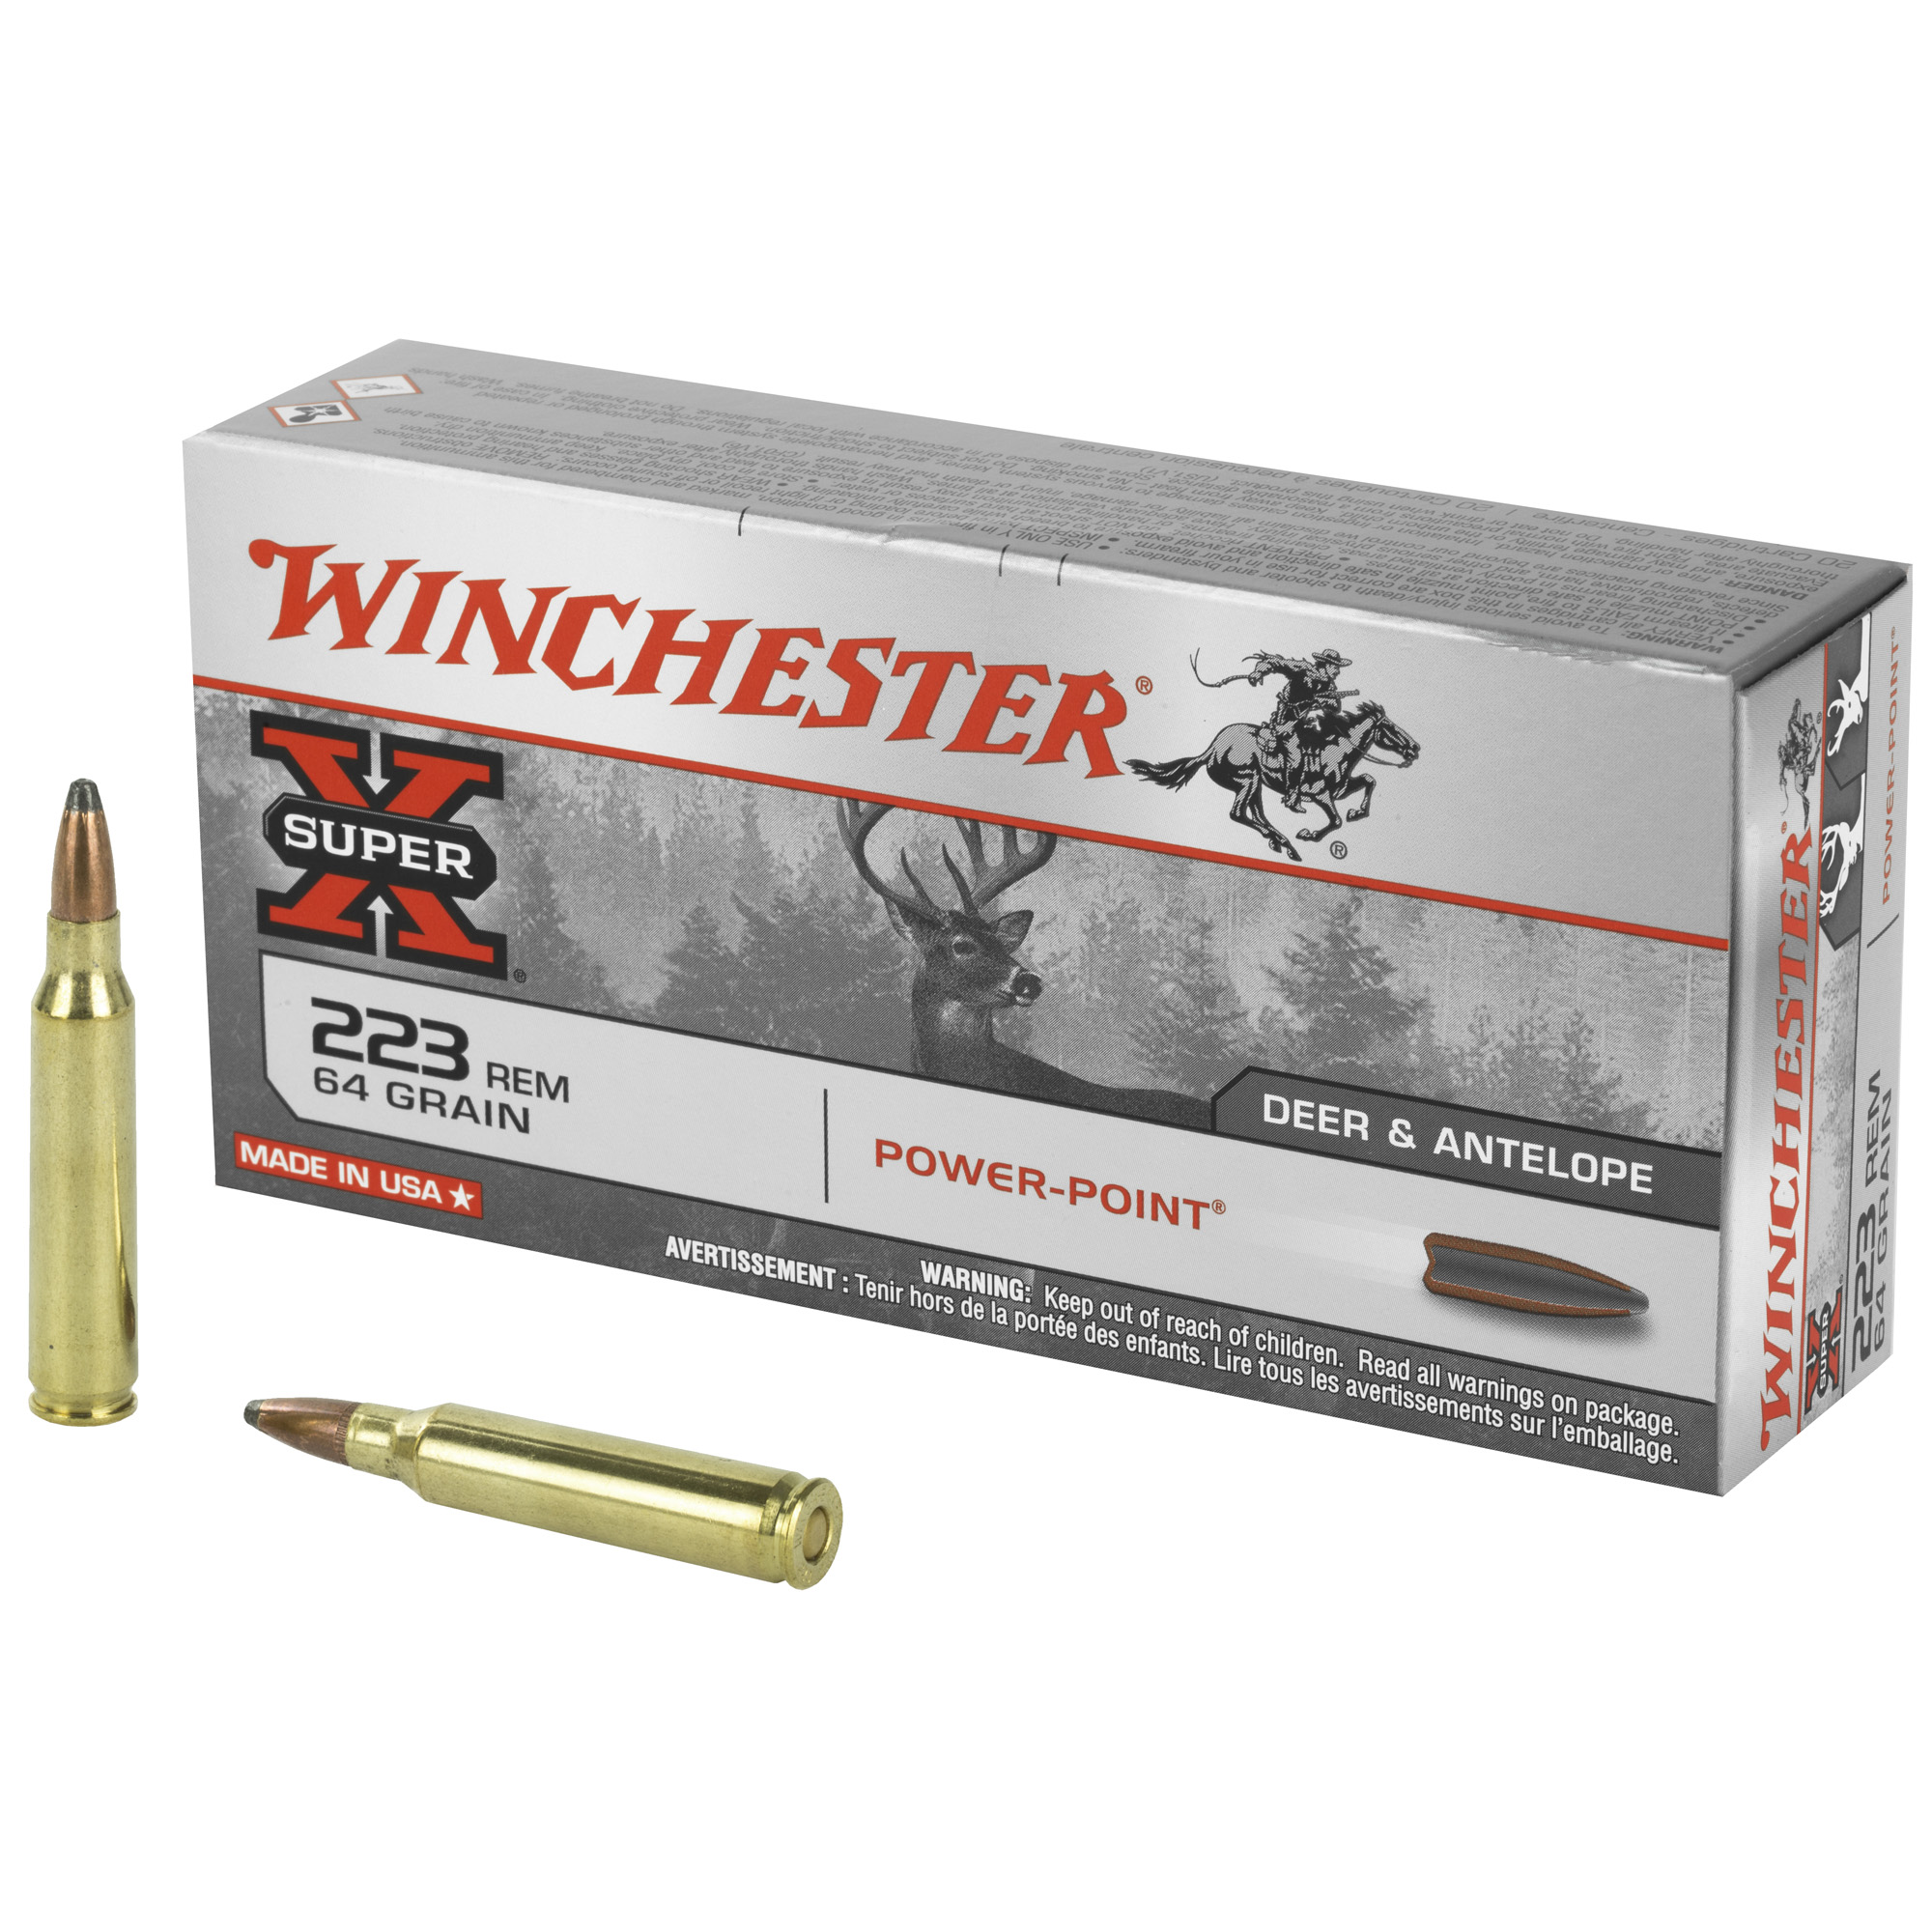 Winchester Ammunition, Super-X, 223REM, 64 Grain, Power Point, 20 Round Box